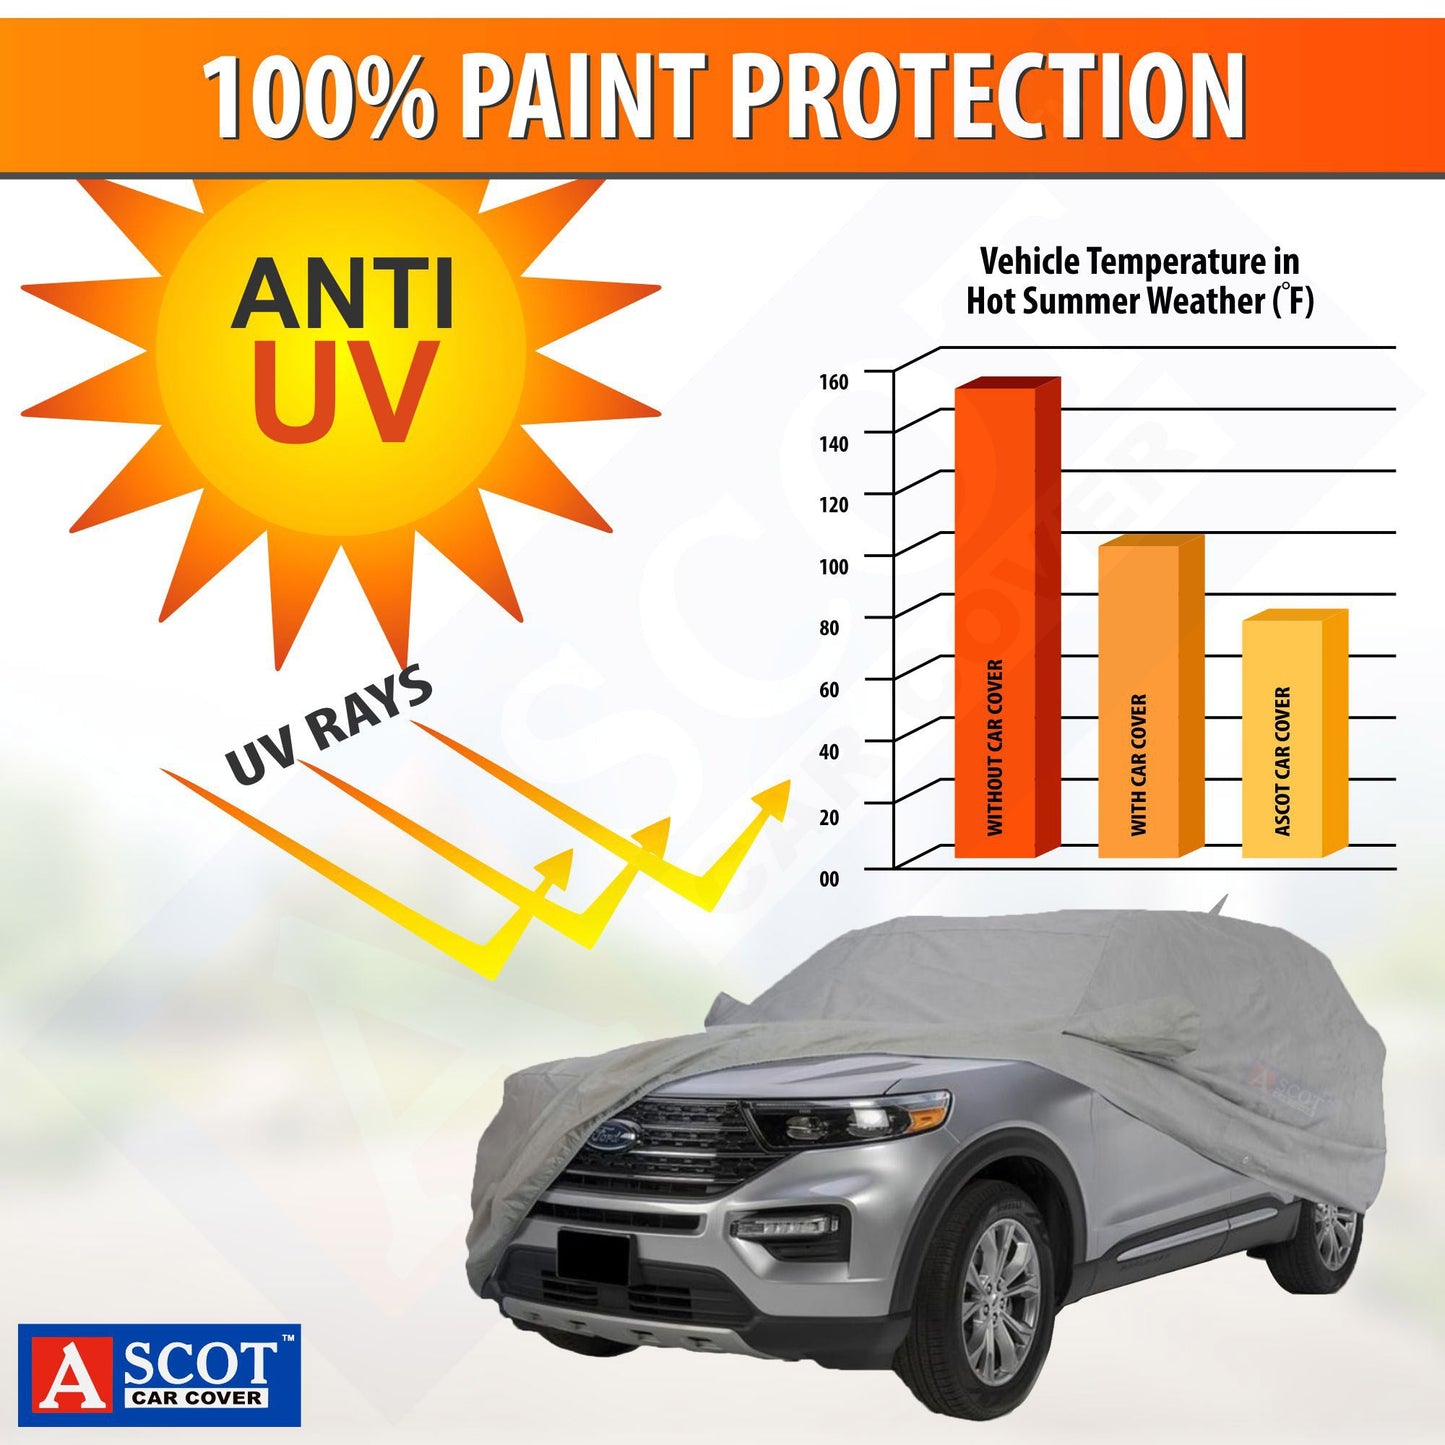 Car body cover Anti UV Comparision Chart. Without Car Cover 150F with Car Cover 100F & with Ascot Car cover 70F